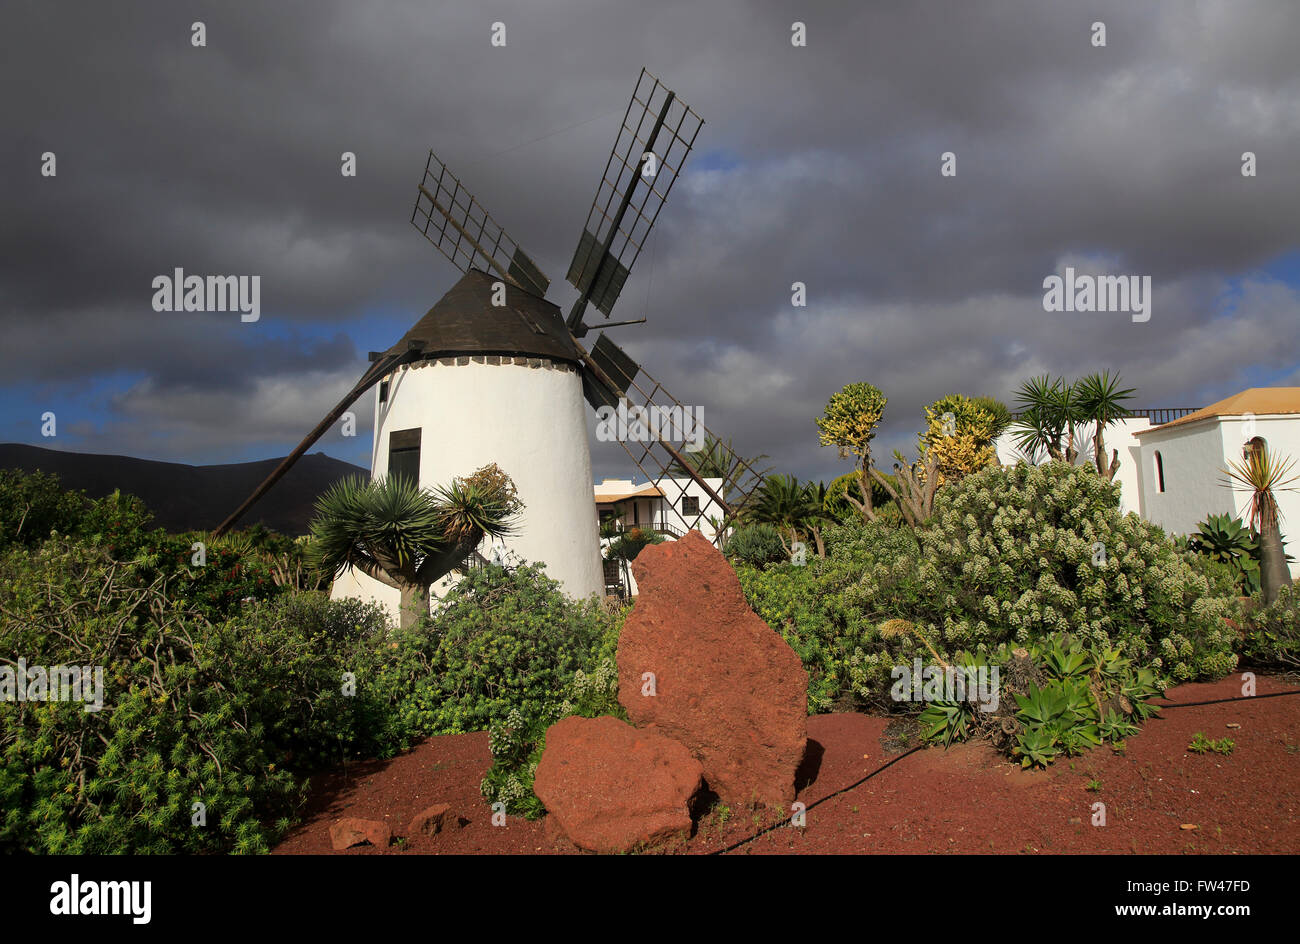 Windmill and garden at Centro de Artesania Molinos de Antigua, Fuerteventura, Canary Islands, Spain Stock Photo